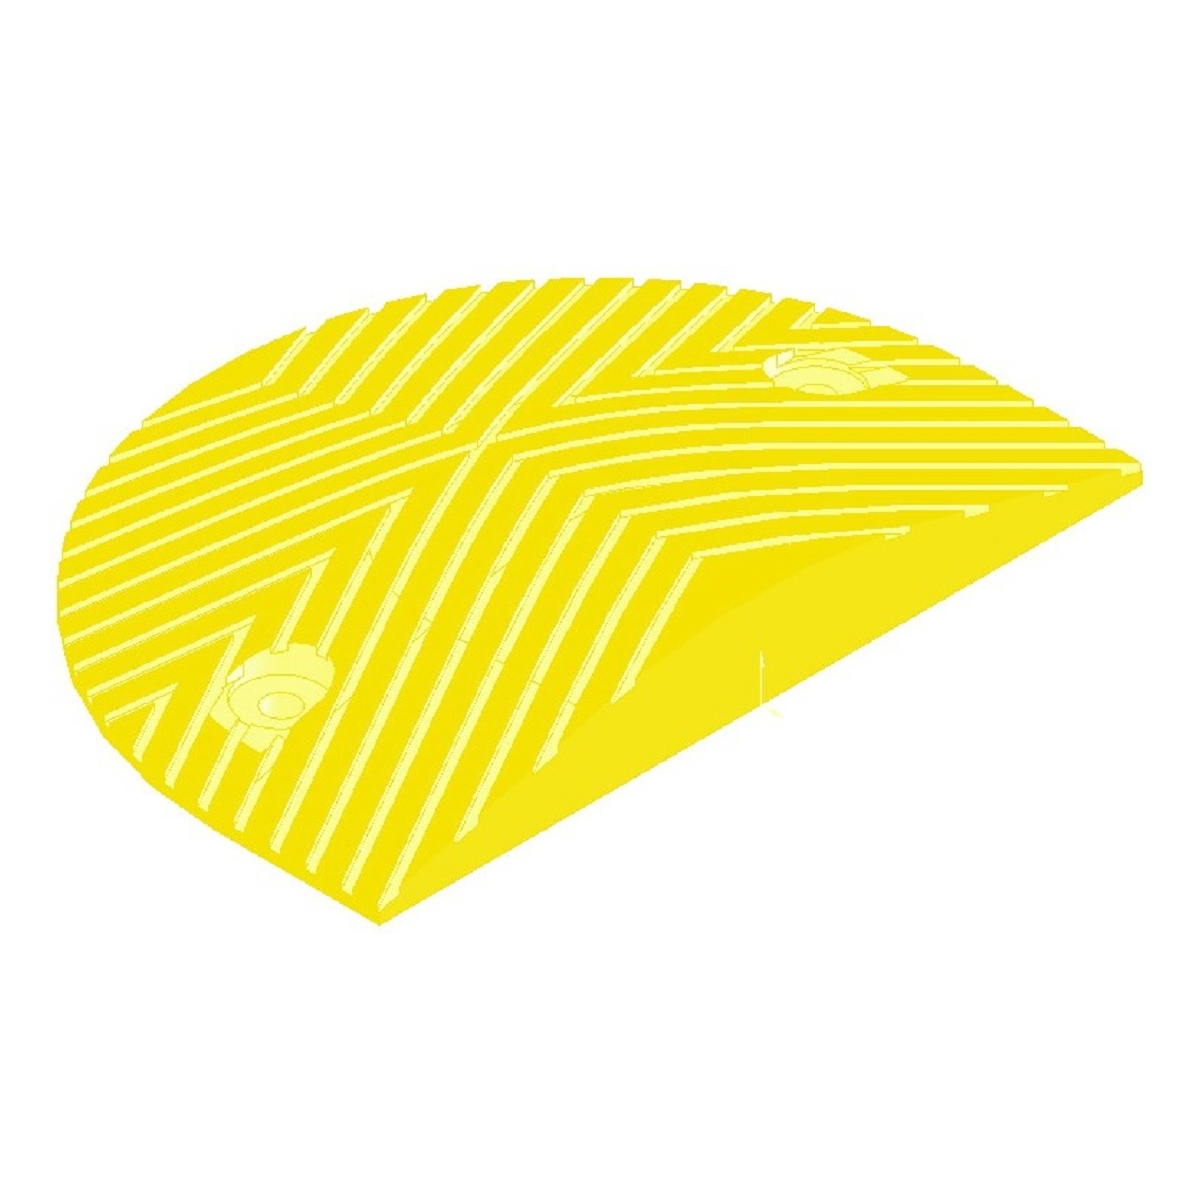 Σαμαράκι ακραίο κομμάτι κίτρινο 5cm ύψος